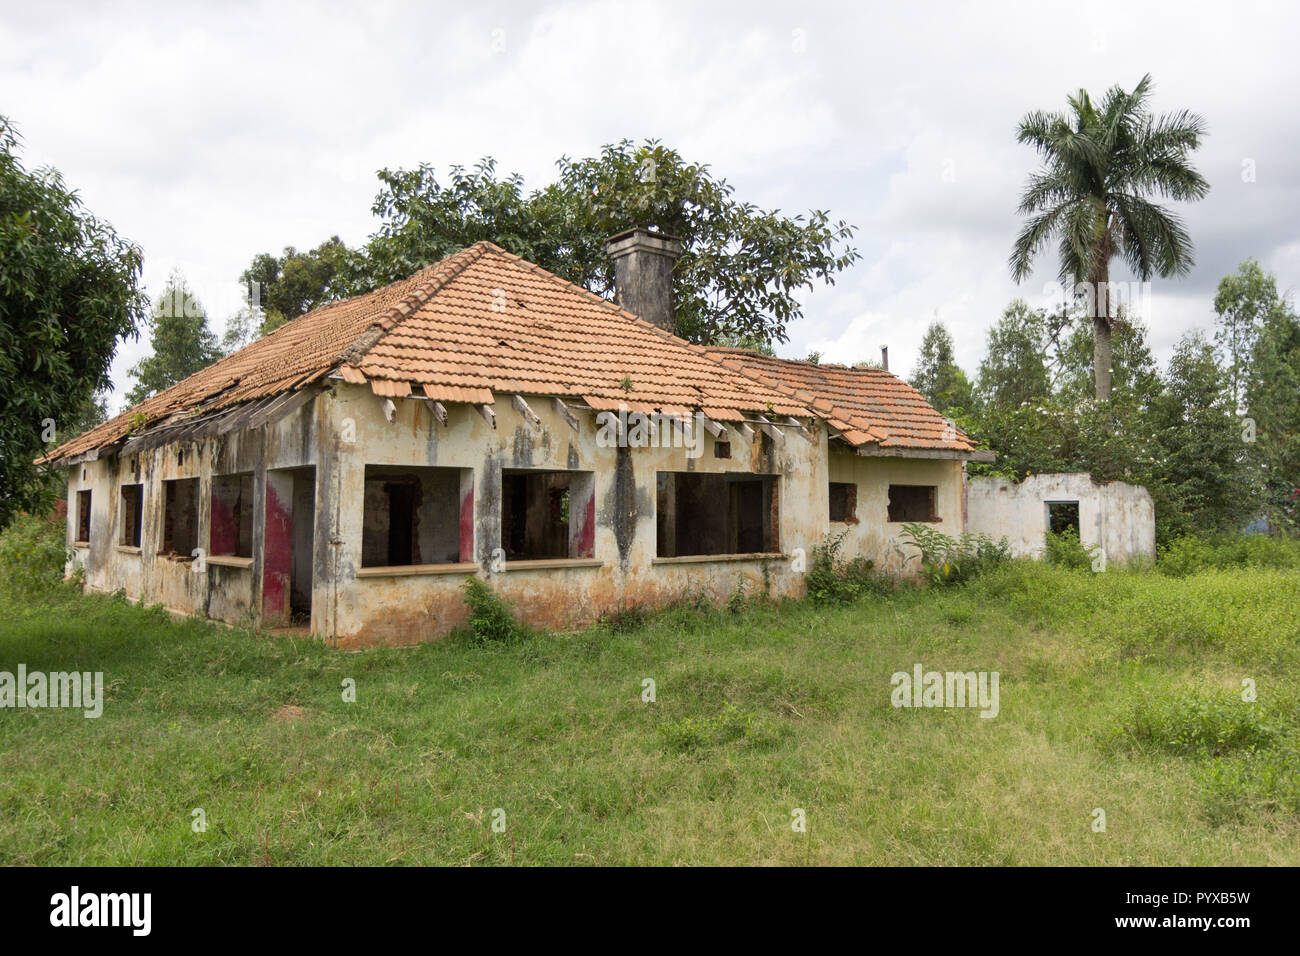 Ein verlassenes Haus in Ruinen. Foto aufgenommen in Ssezibwa, Uganda am 23. April 2017. Stockfoto